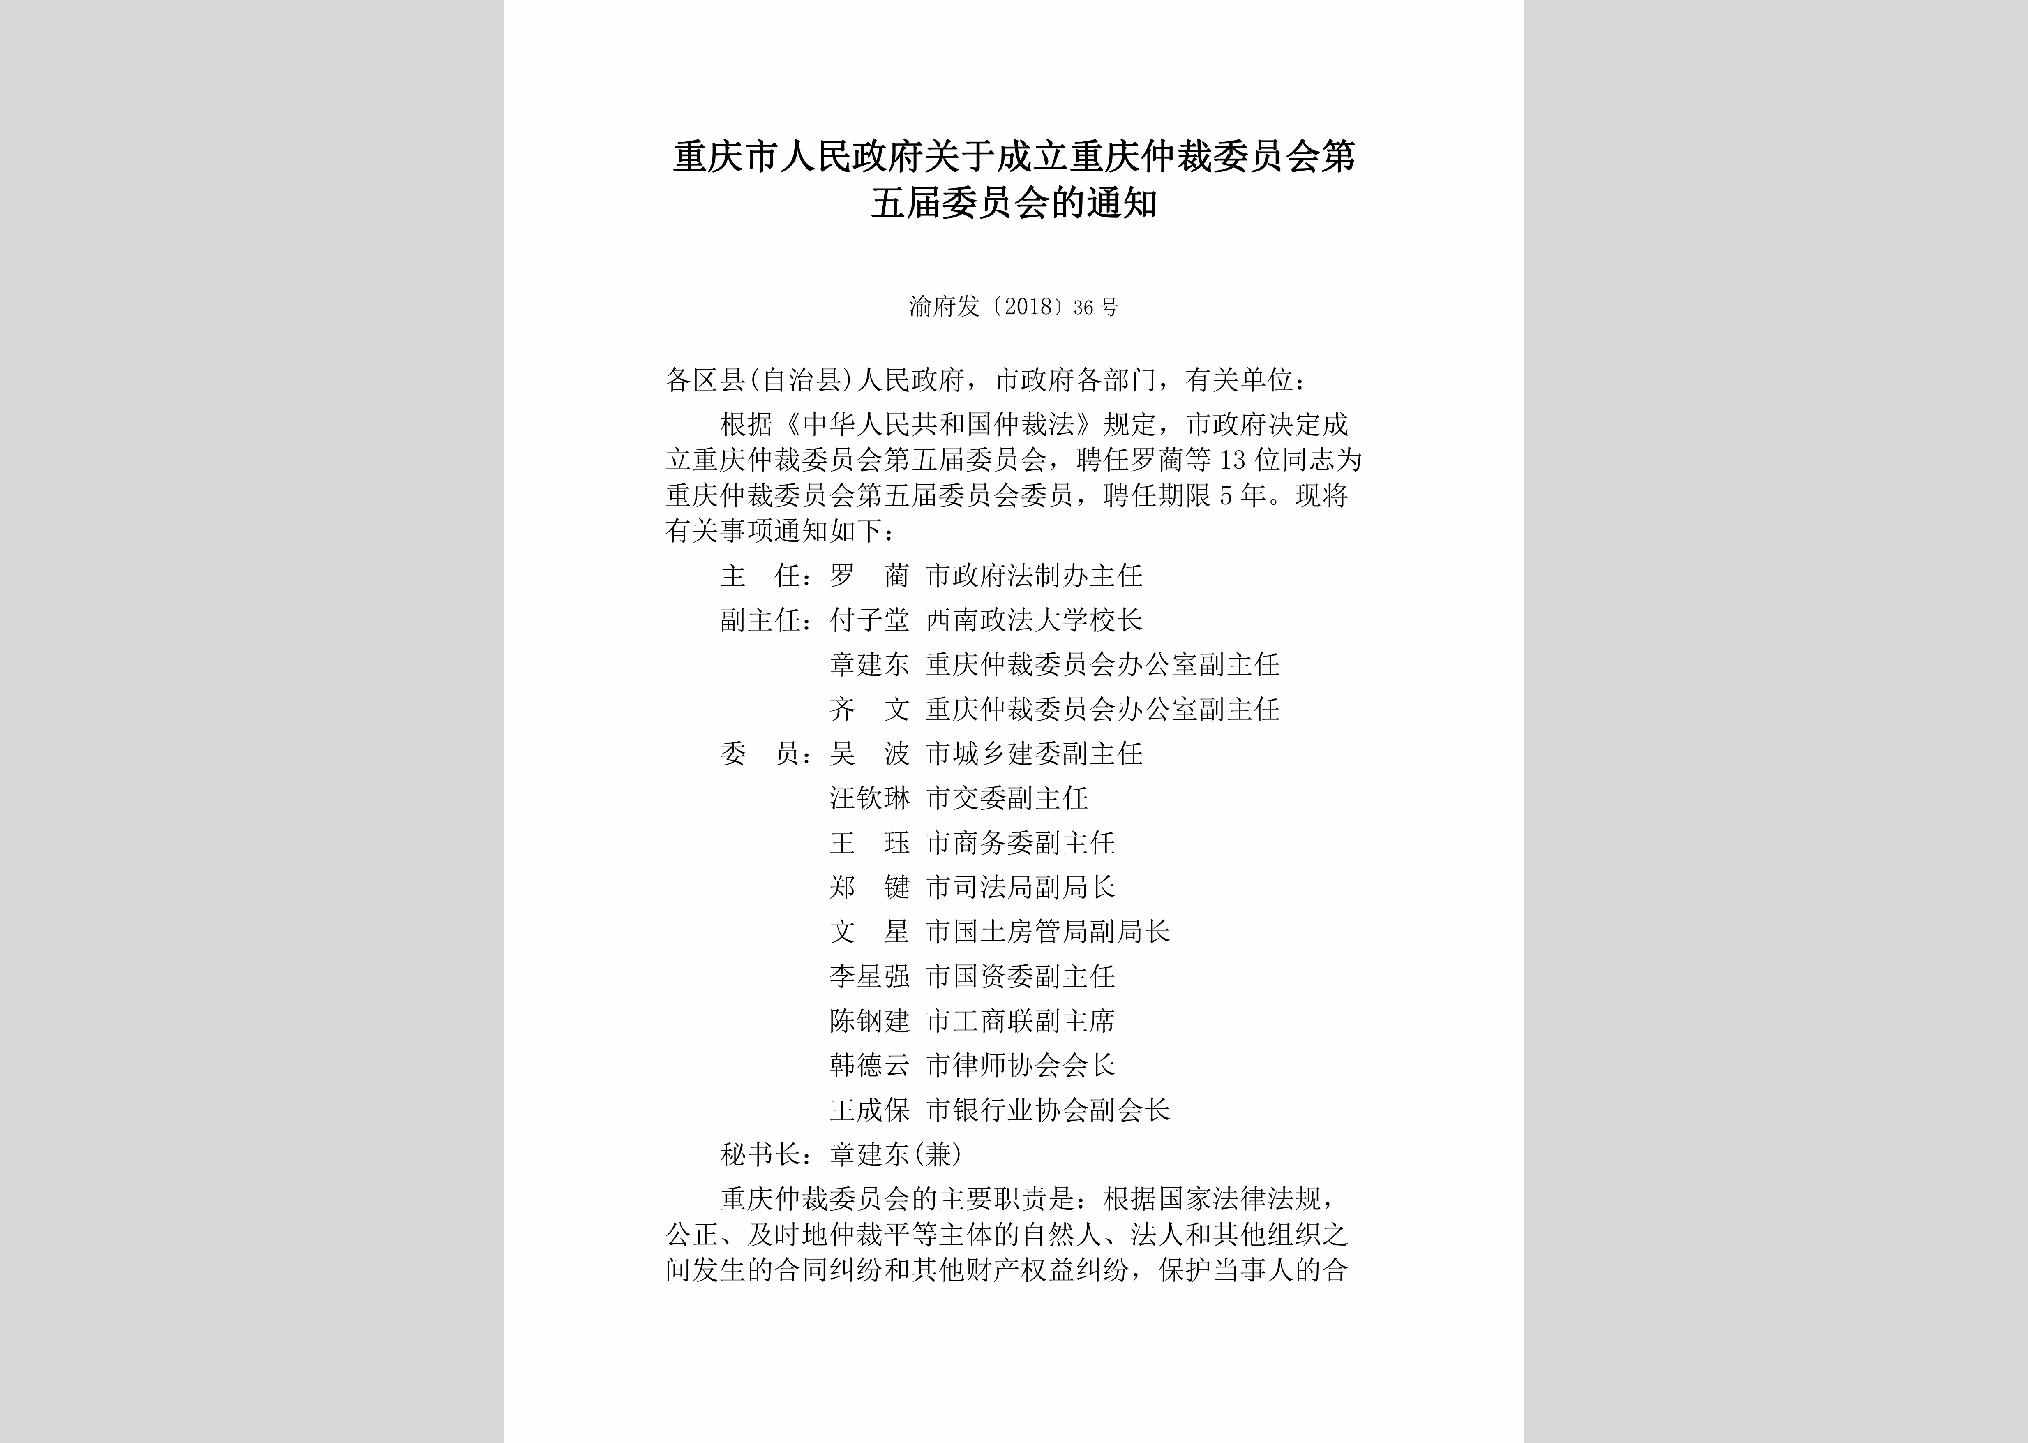 渝府发[2018]36号：重庆市人民政府关于成立重庆仲裁委员会第五届委员会的通知